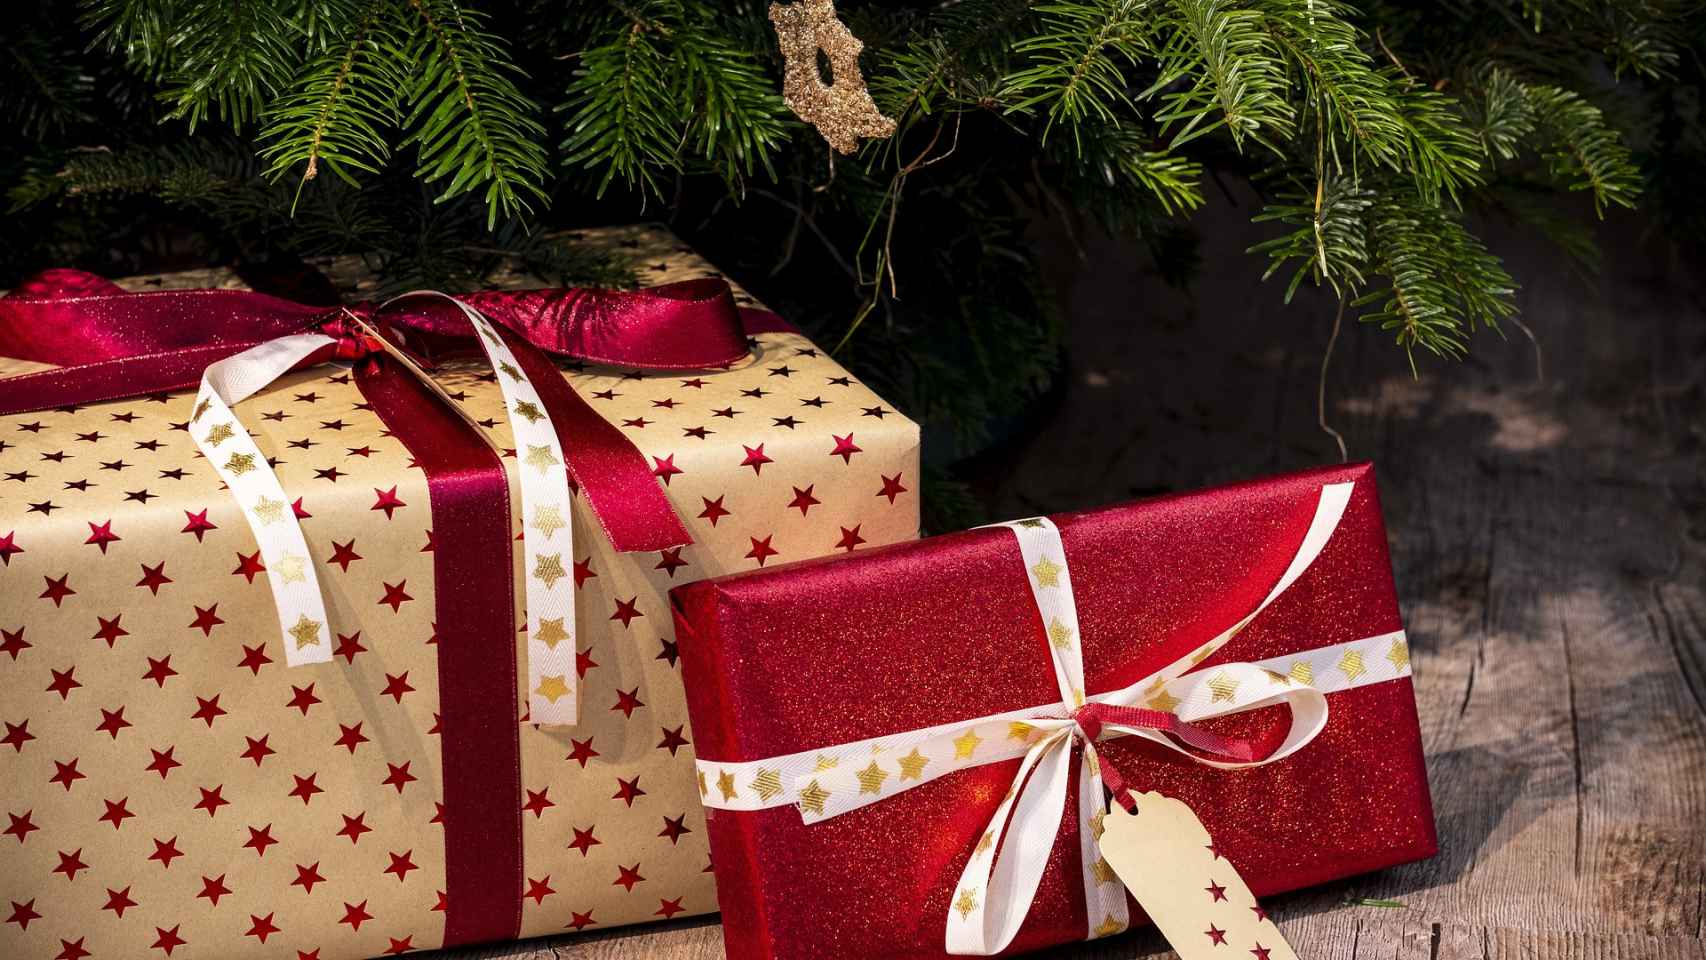 Cómo sorprender estas navidades con un regalo original